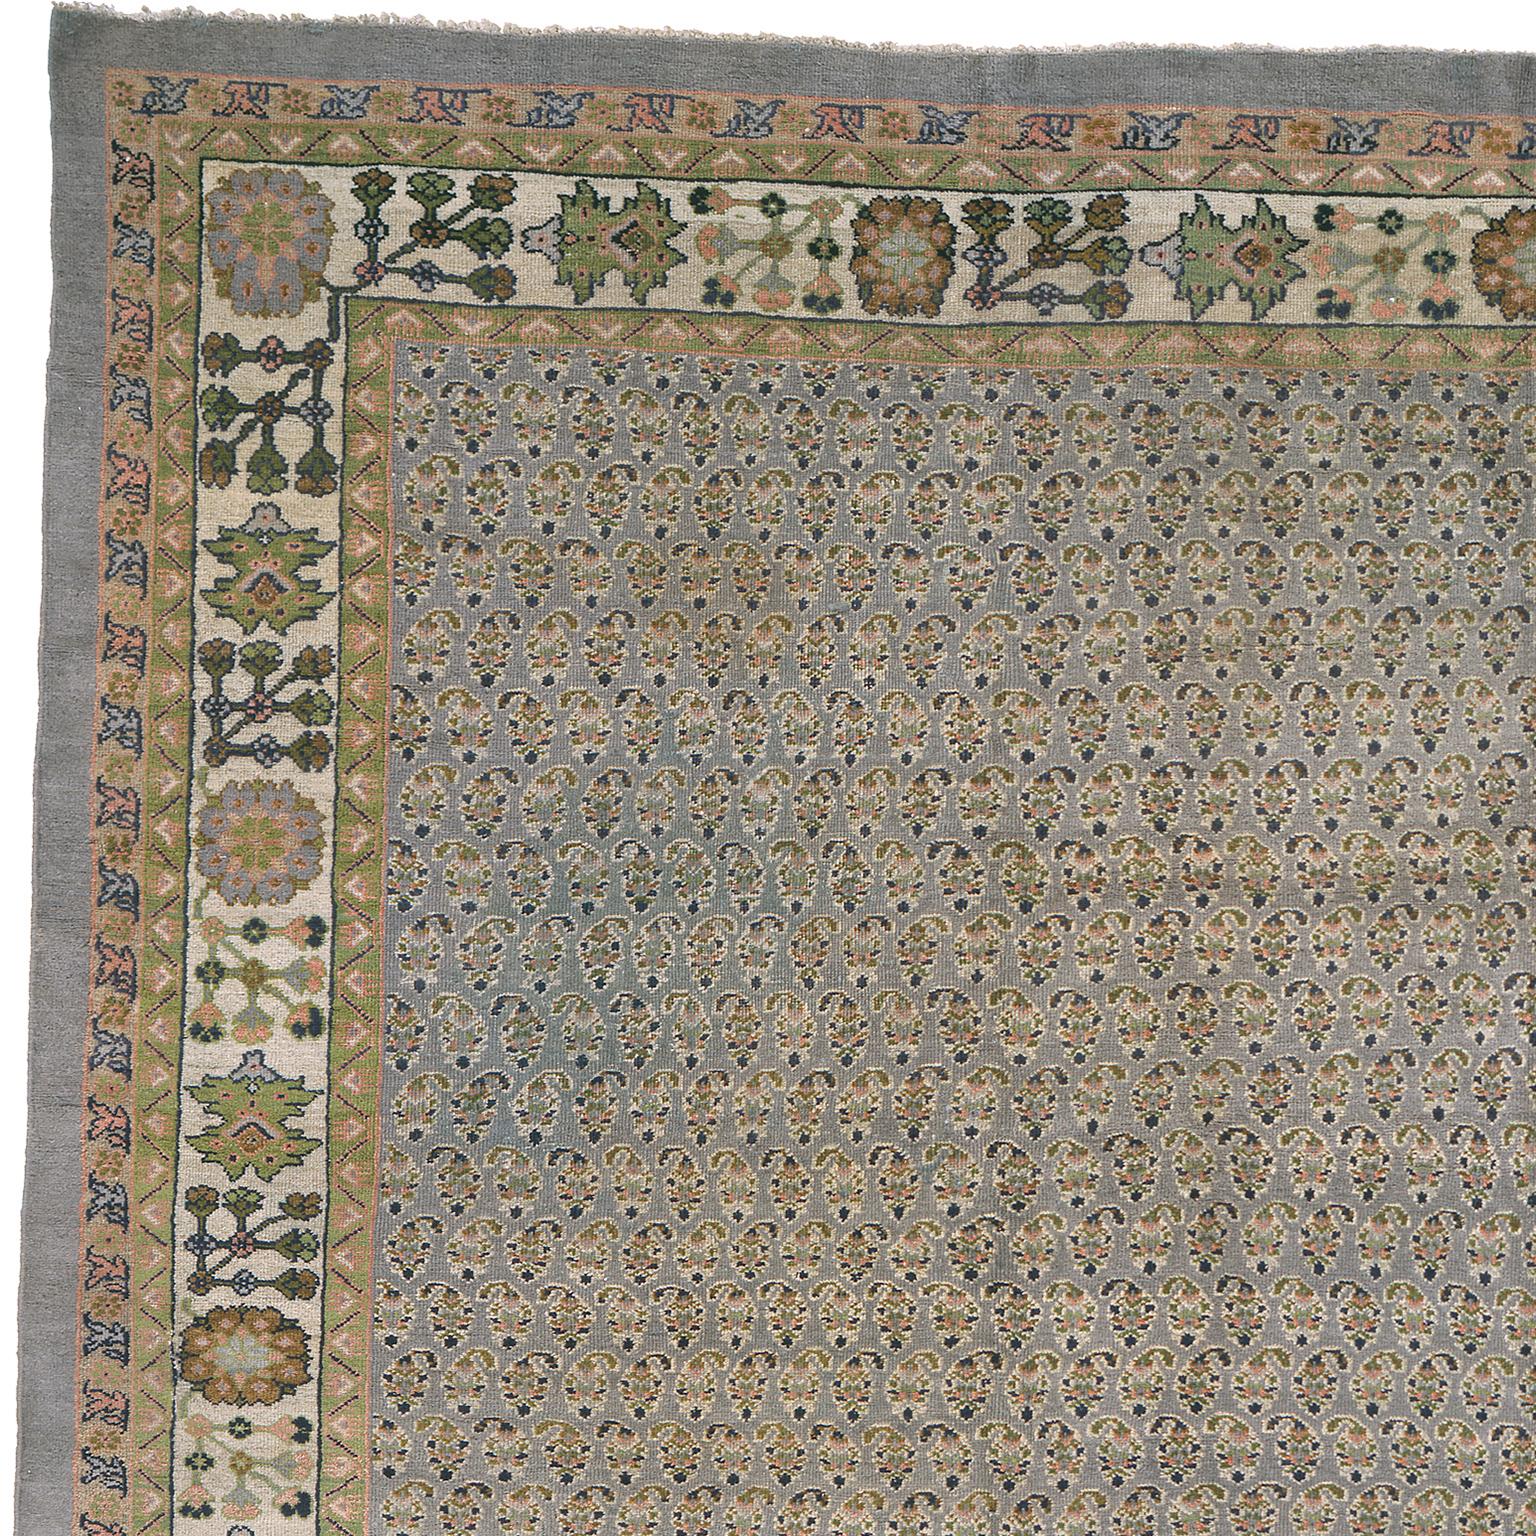 Persia, circa 1890
Handwoven
Measures: 16'10